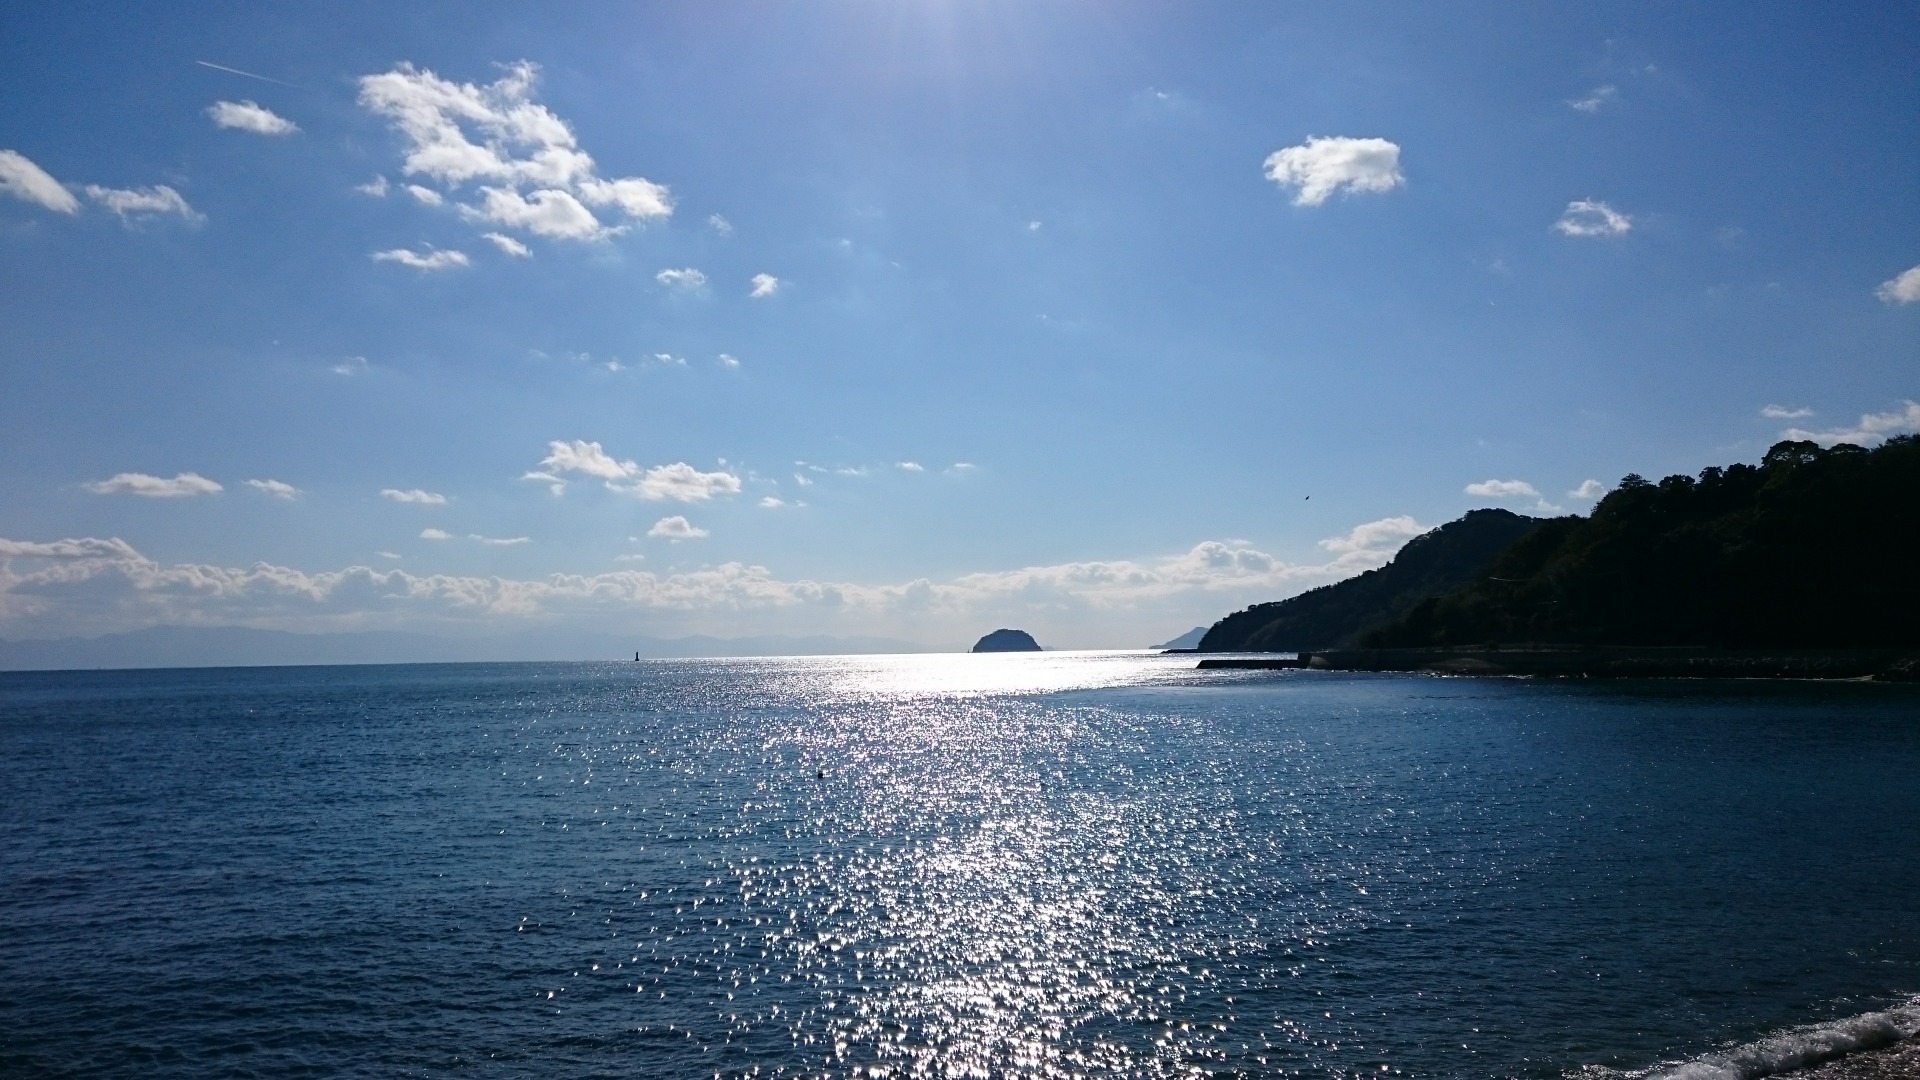 媛民とは私だ 愛媛県松山市民になった私 愛媛県松山市には 数々の綺麗な島があるのをご存じ